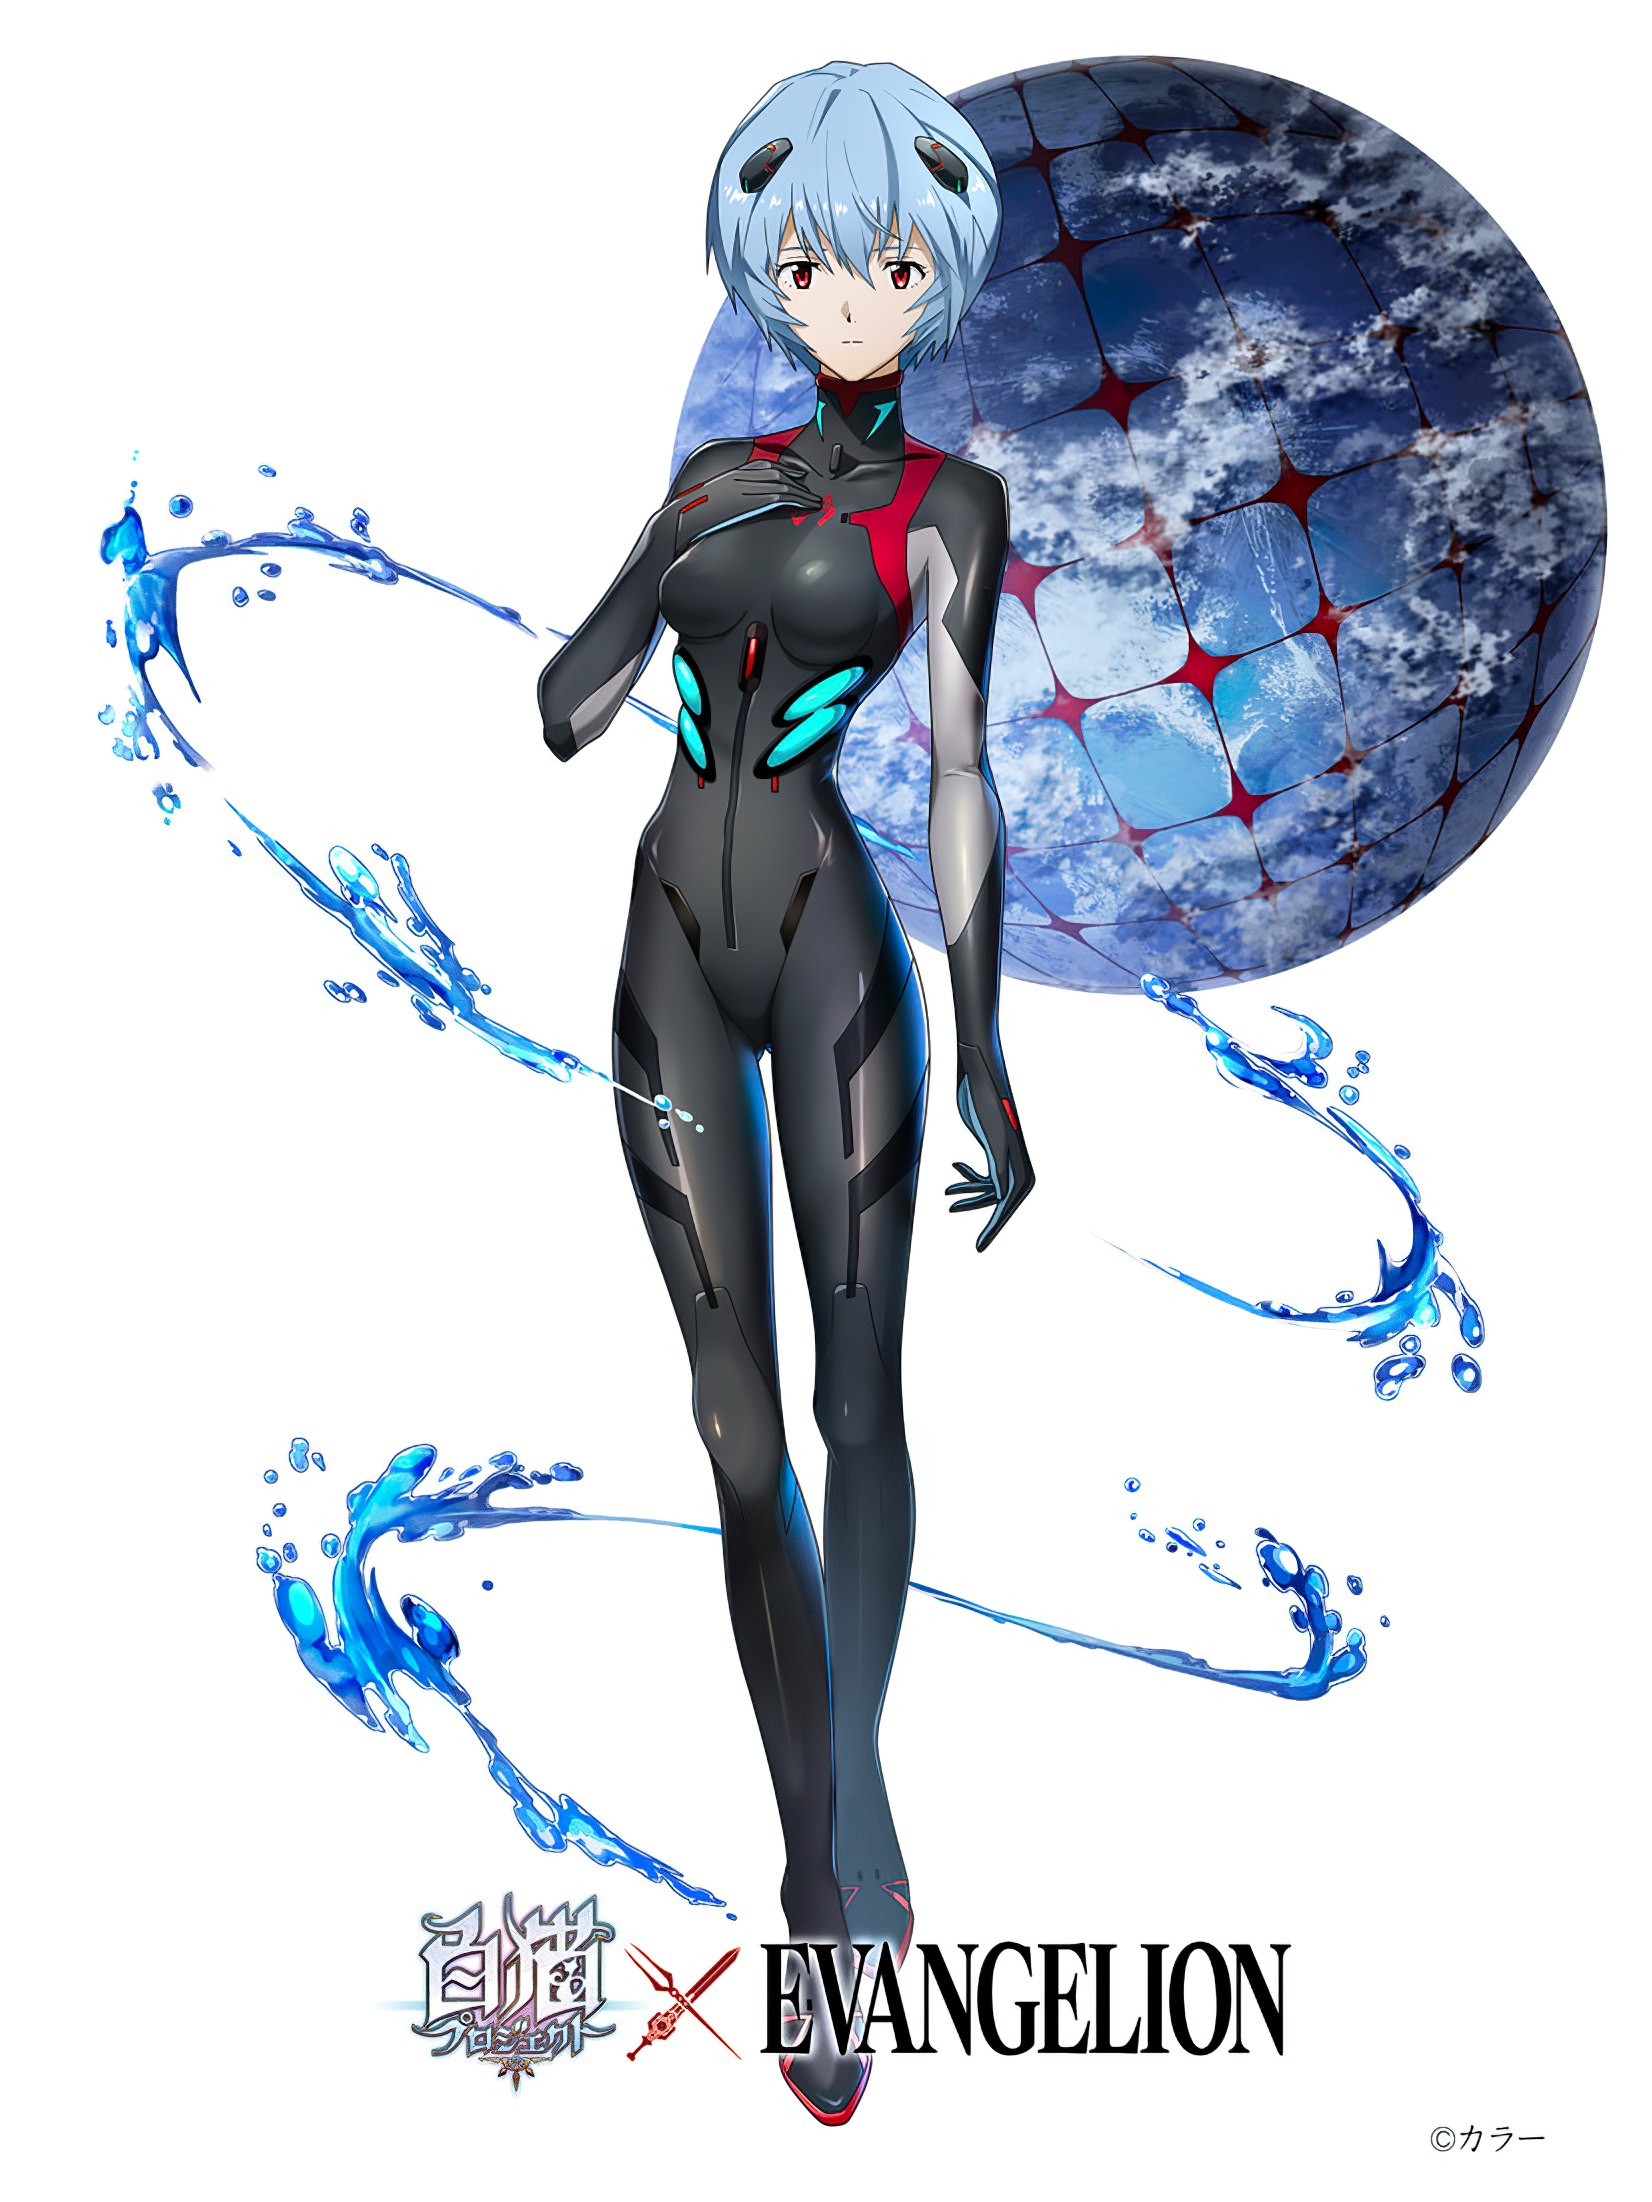 El videojuego Shironeko Project anuncia una colaboración con Evangelion